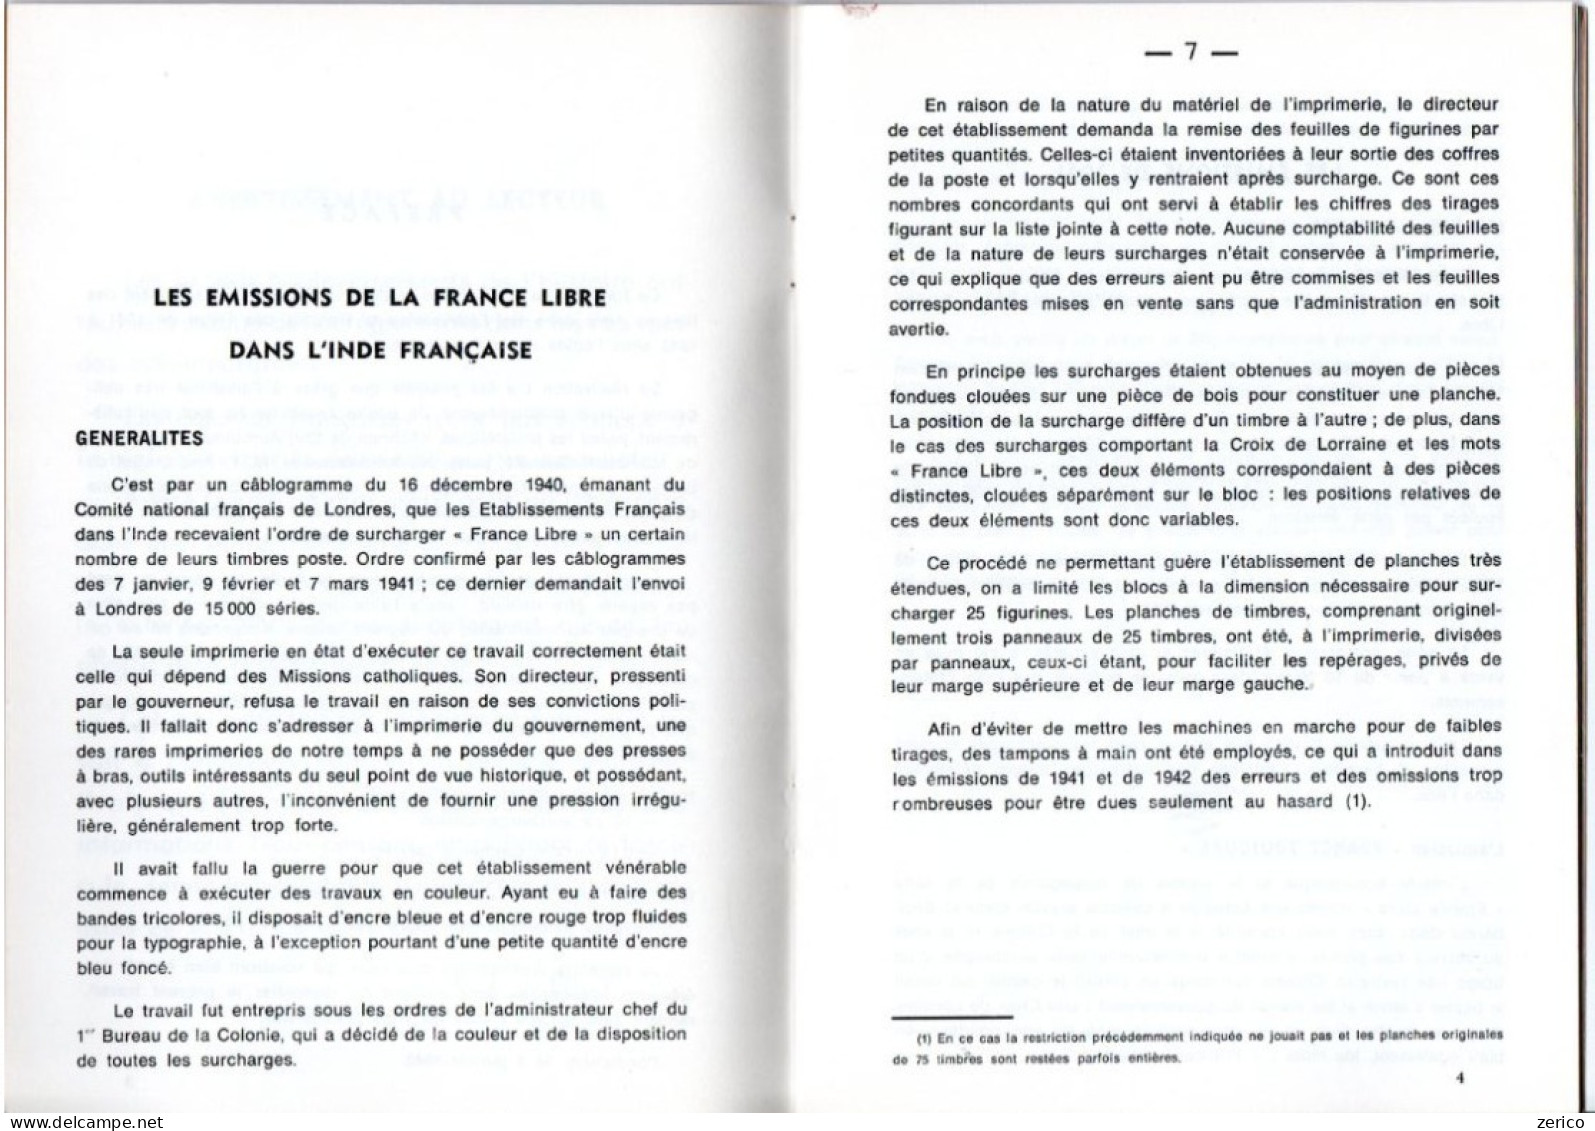 LES SURCHARGES "FRANCE LIBRE" Dans Les Ets Français En Inde 1941-45; 22 Pages; Edition 1984 - Oblitérés